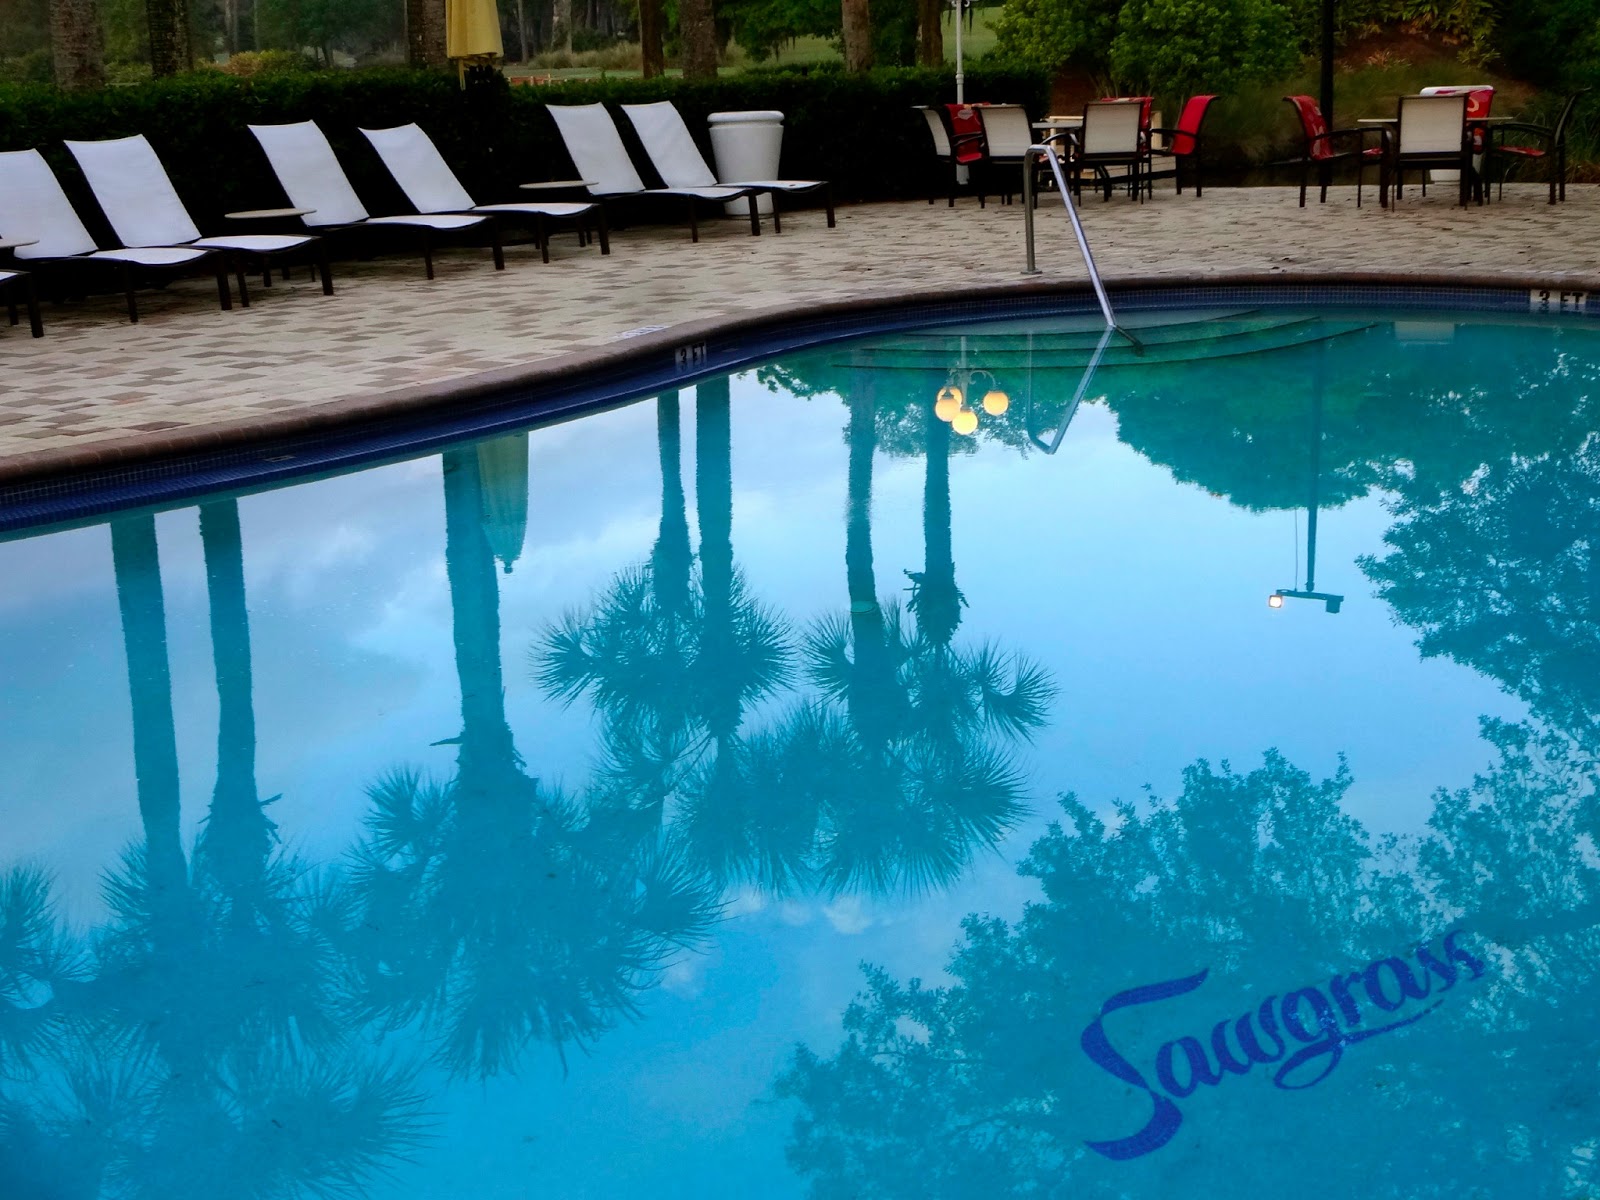 Sawgrass Marriott Resort Pool